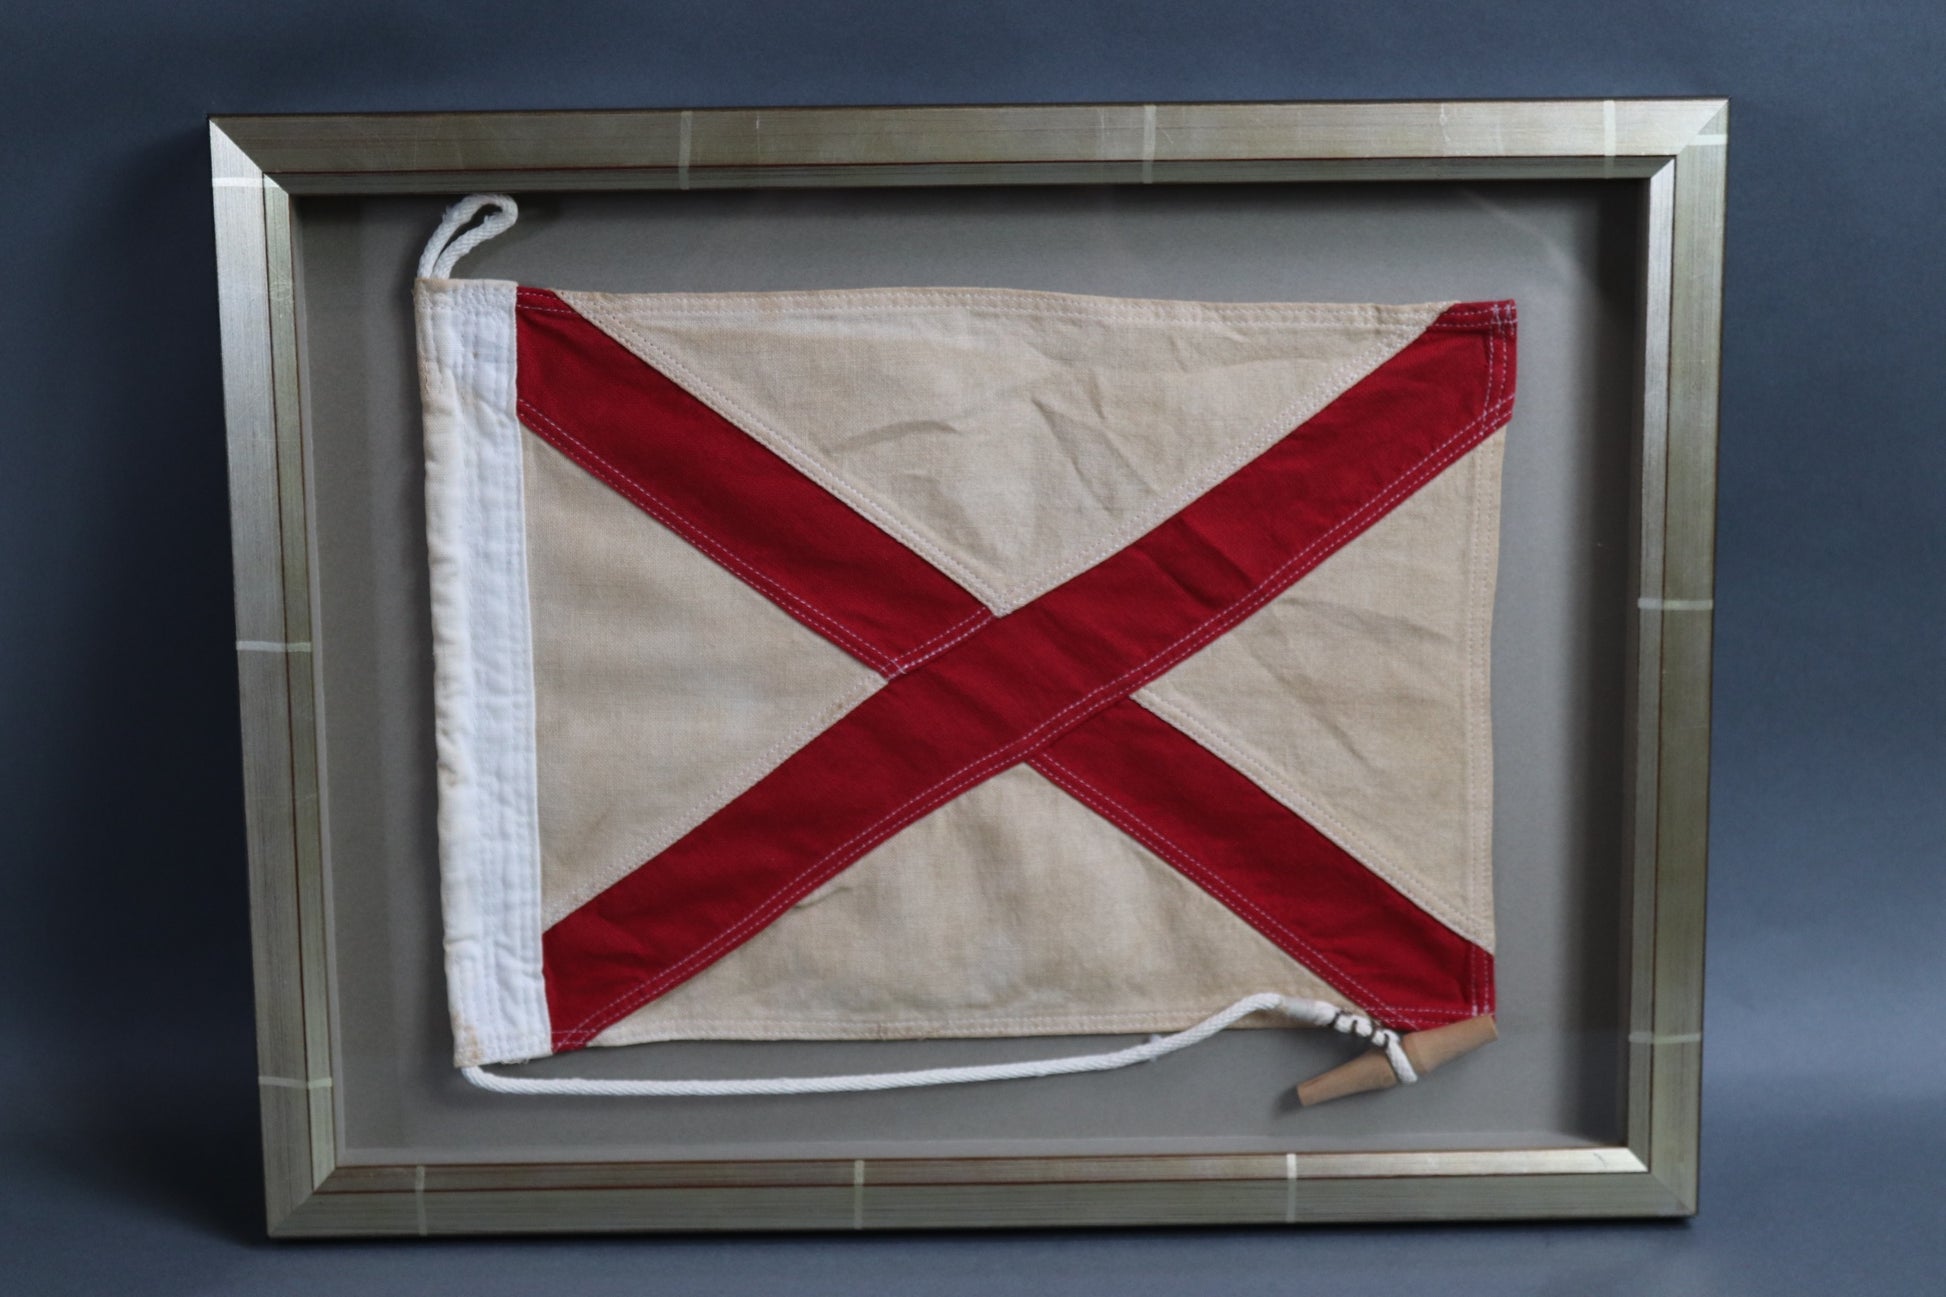 Framed Maritime Signal Flag of Letter V - Lannan Gallery